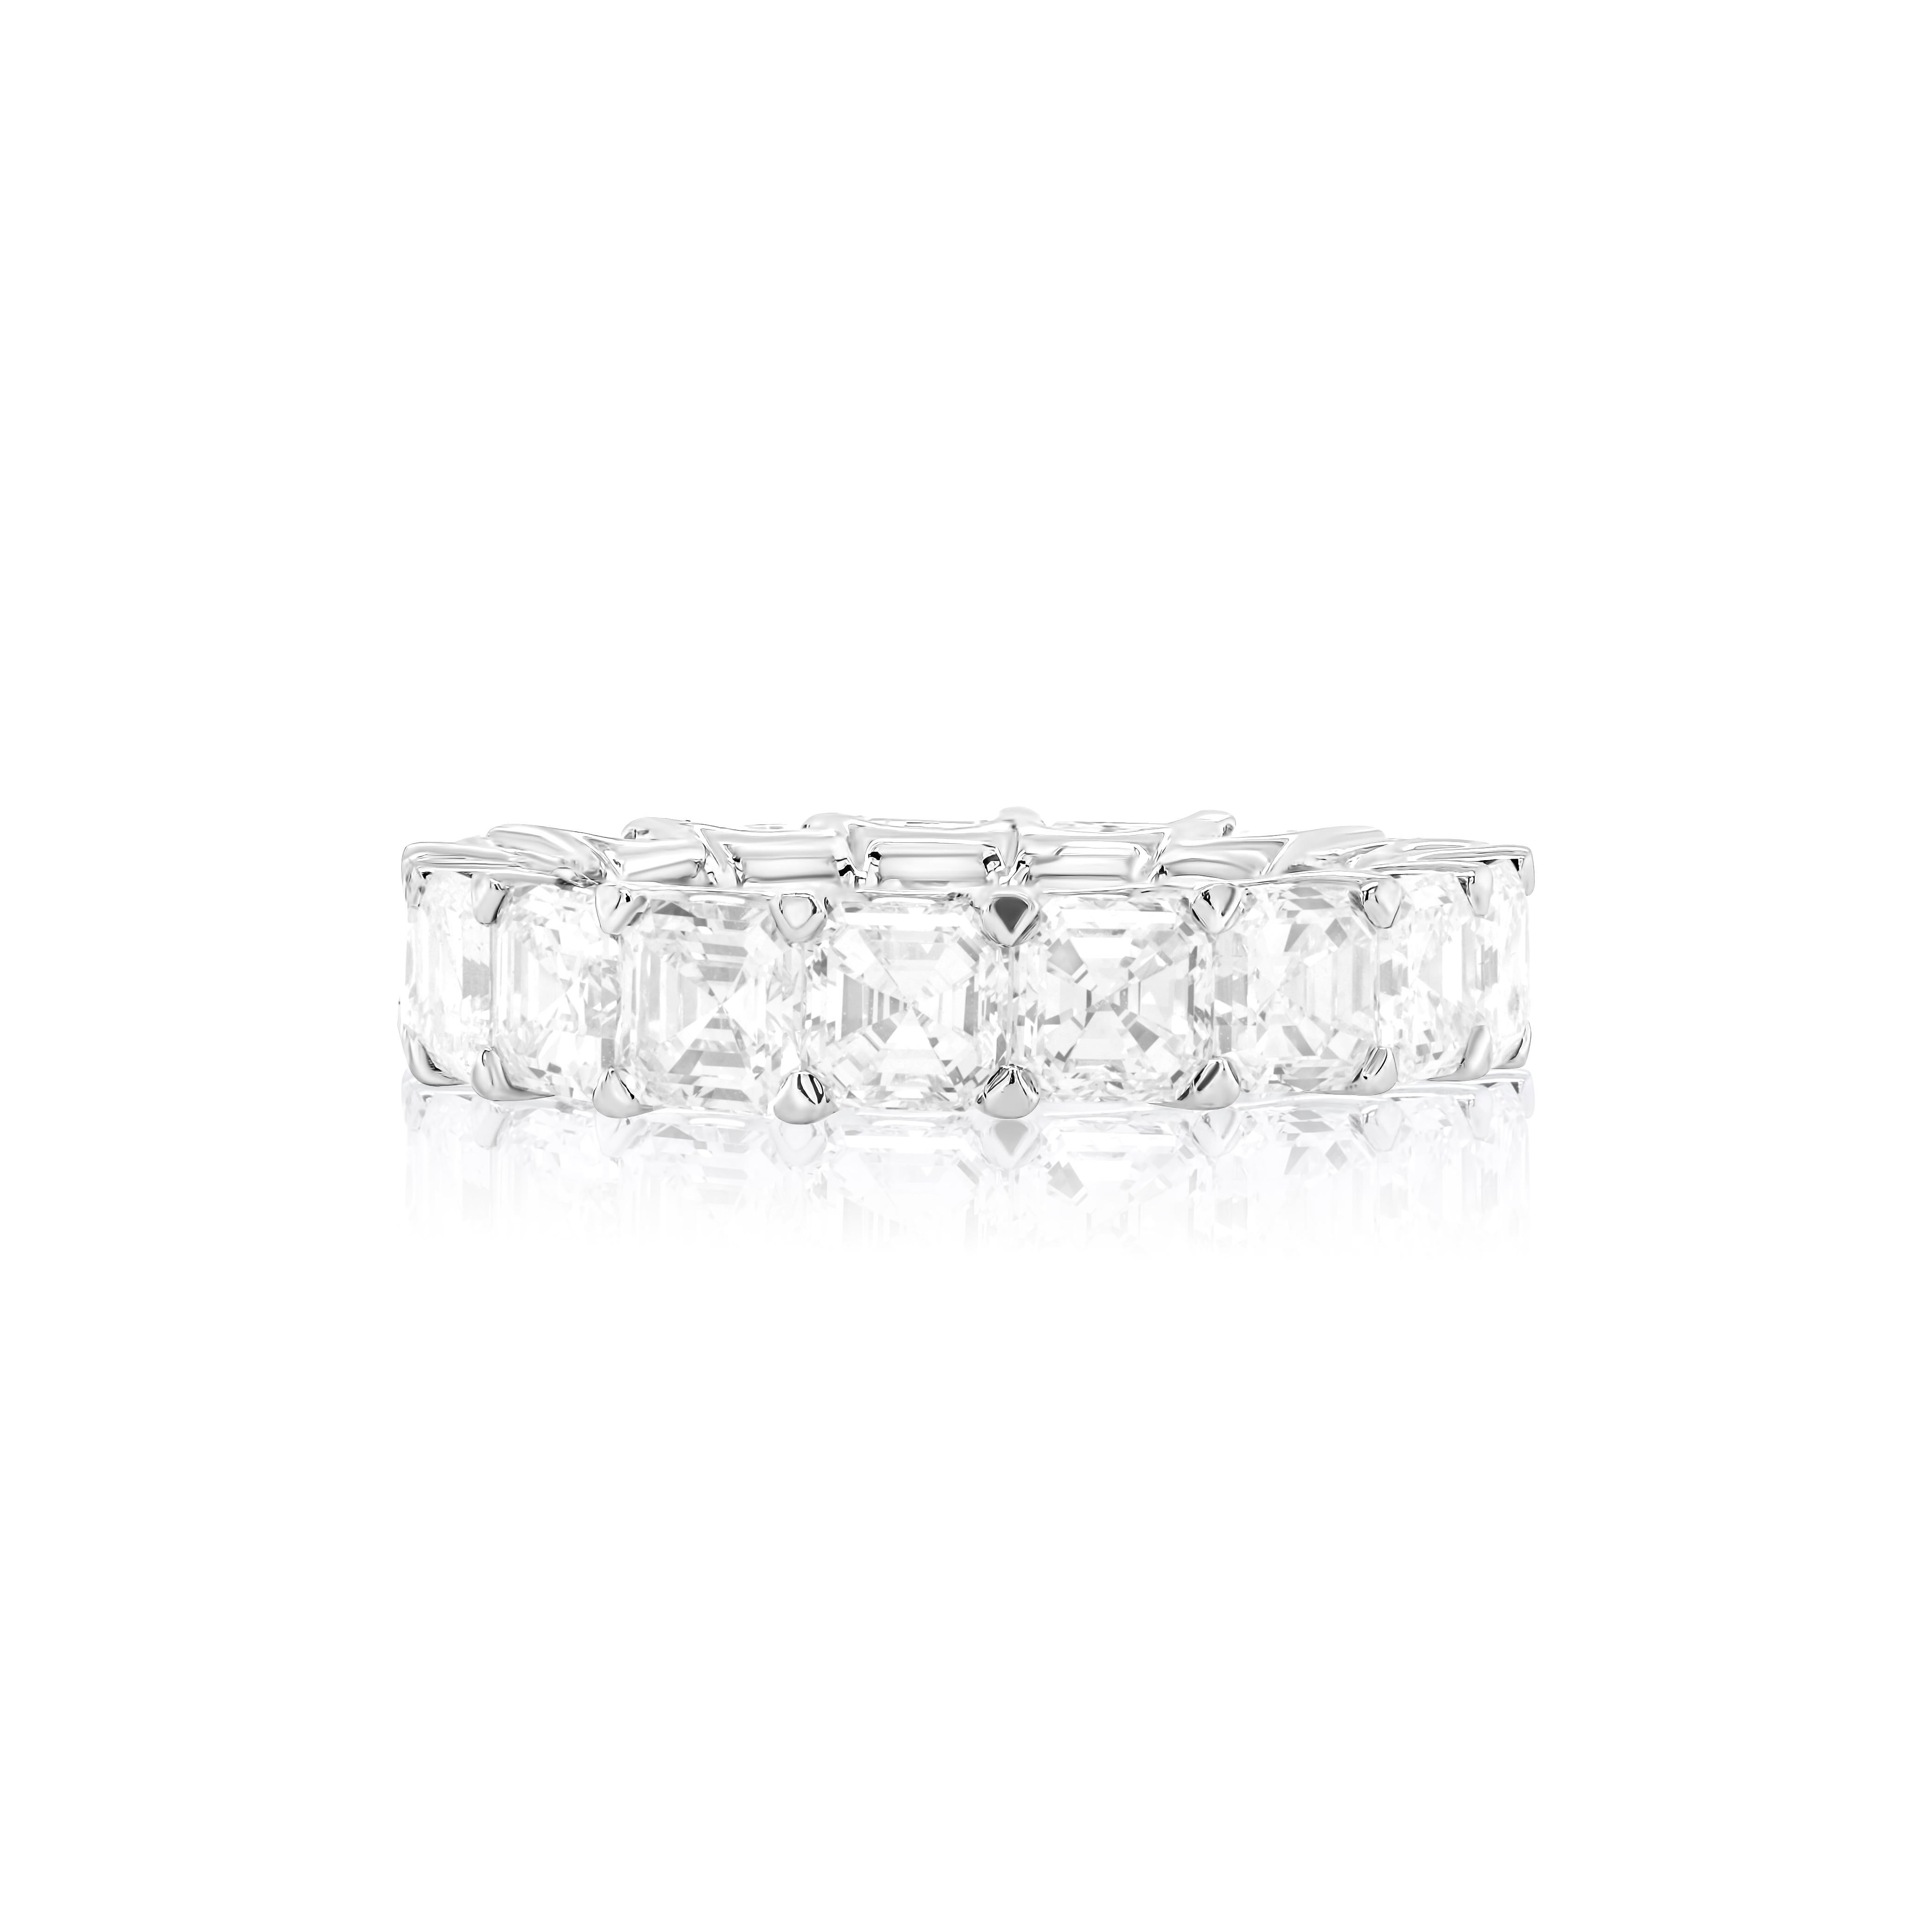 Modern Diana M. Platinum asscher cut diamonds VVSVS def eternity wedding band with 8.85 For Sale